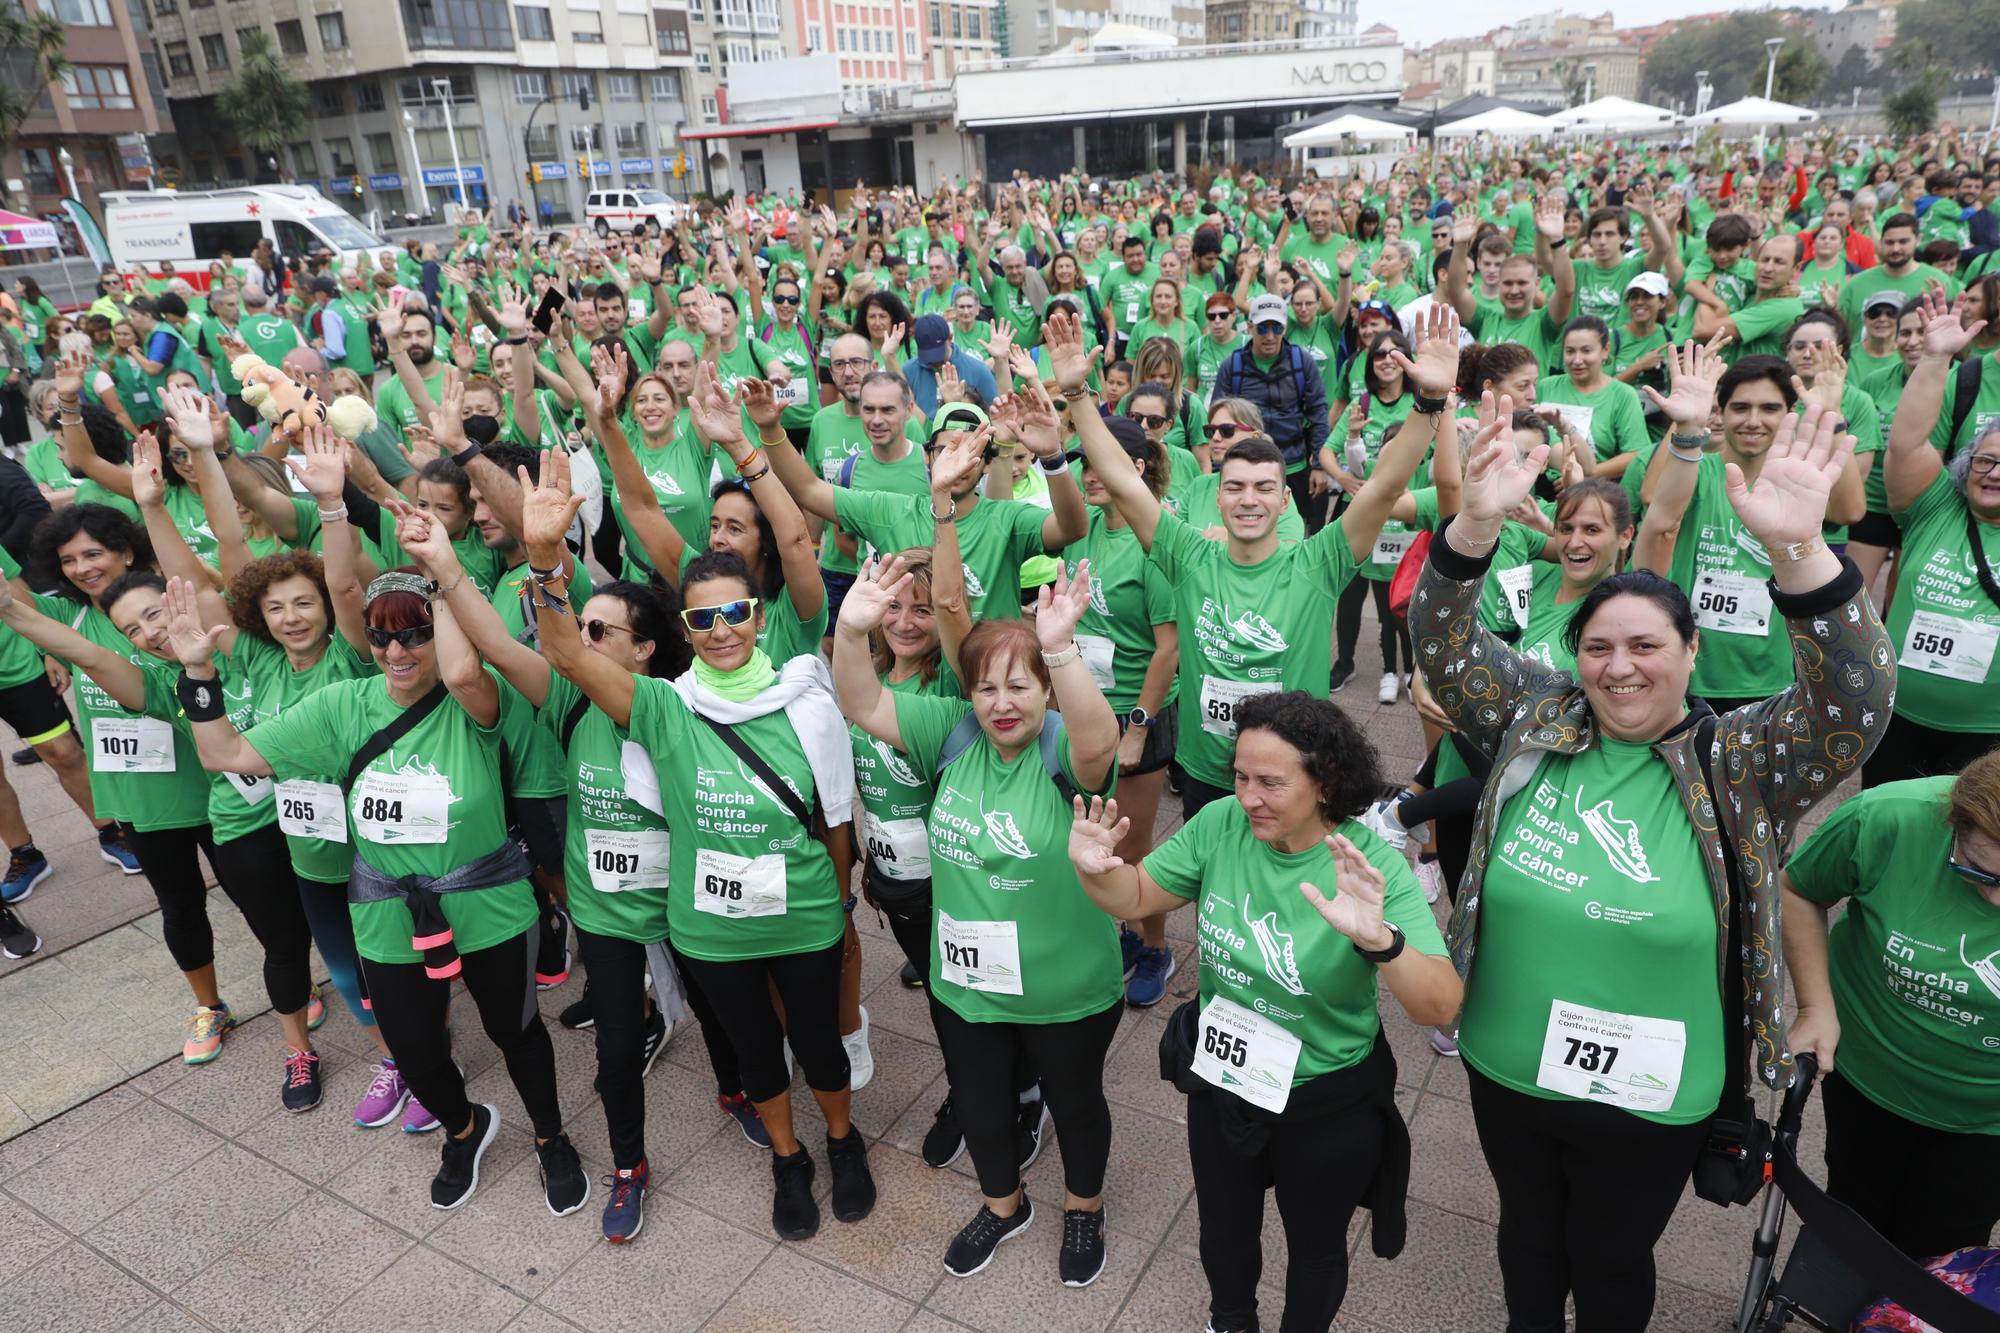 Marcha contra el cáncer en Gijón